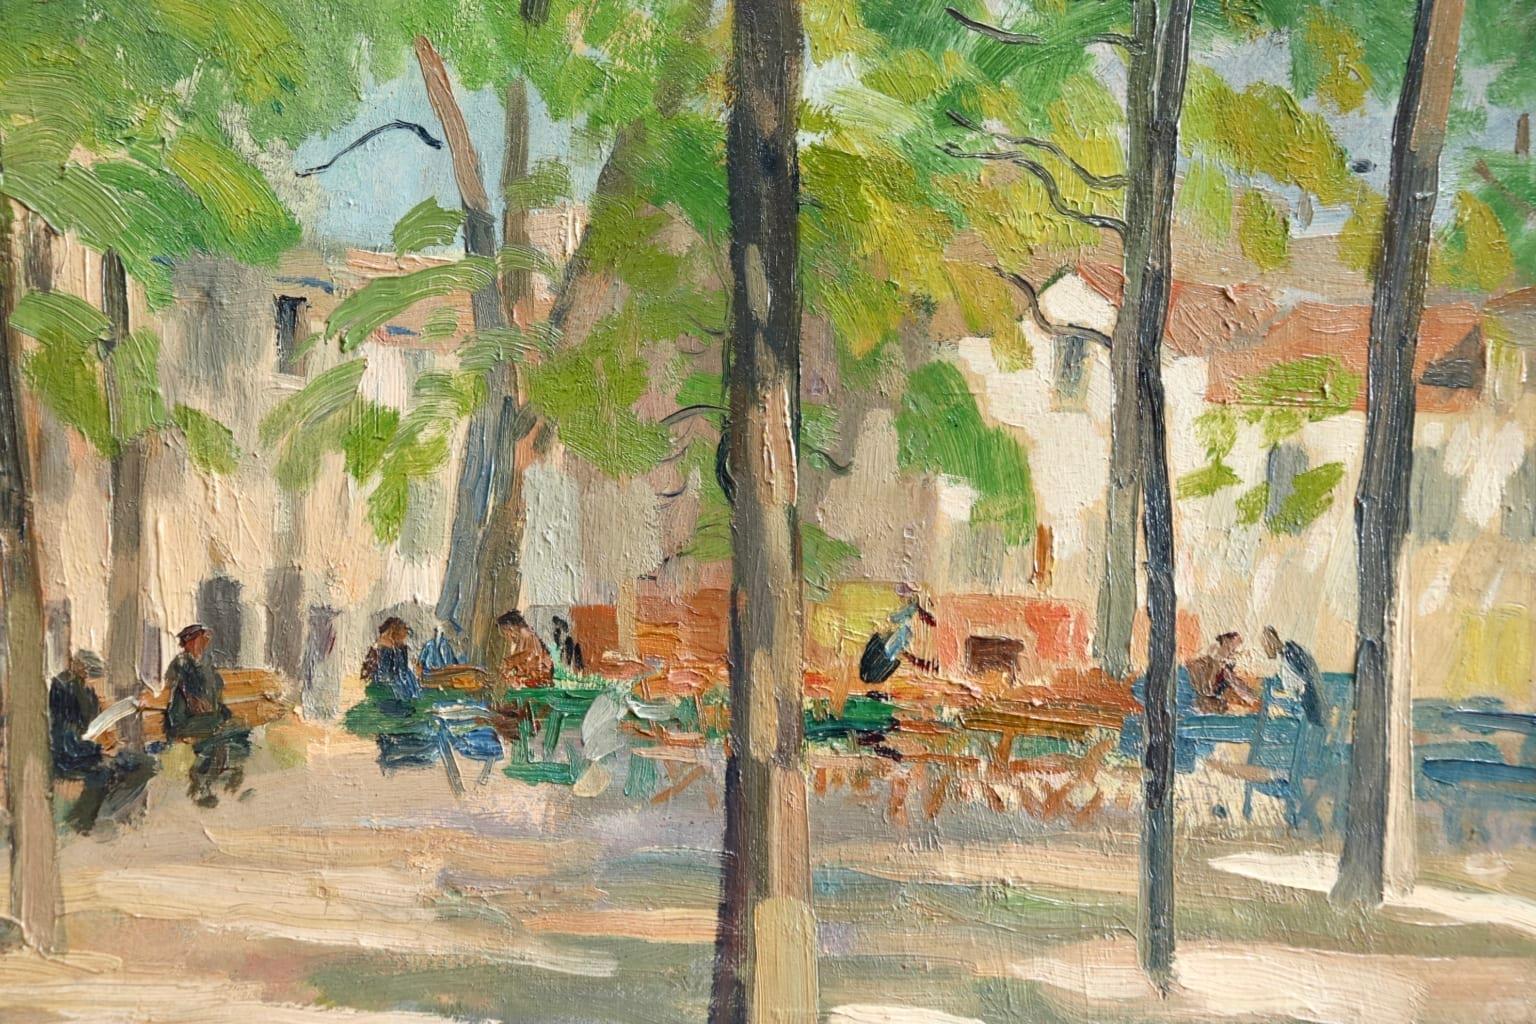 Matin D'ete - Place du Tertre, Montmartre - Figures in Town Landscape by E Pavil 1